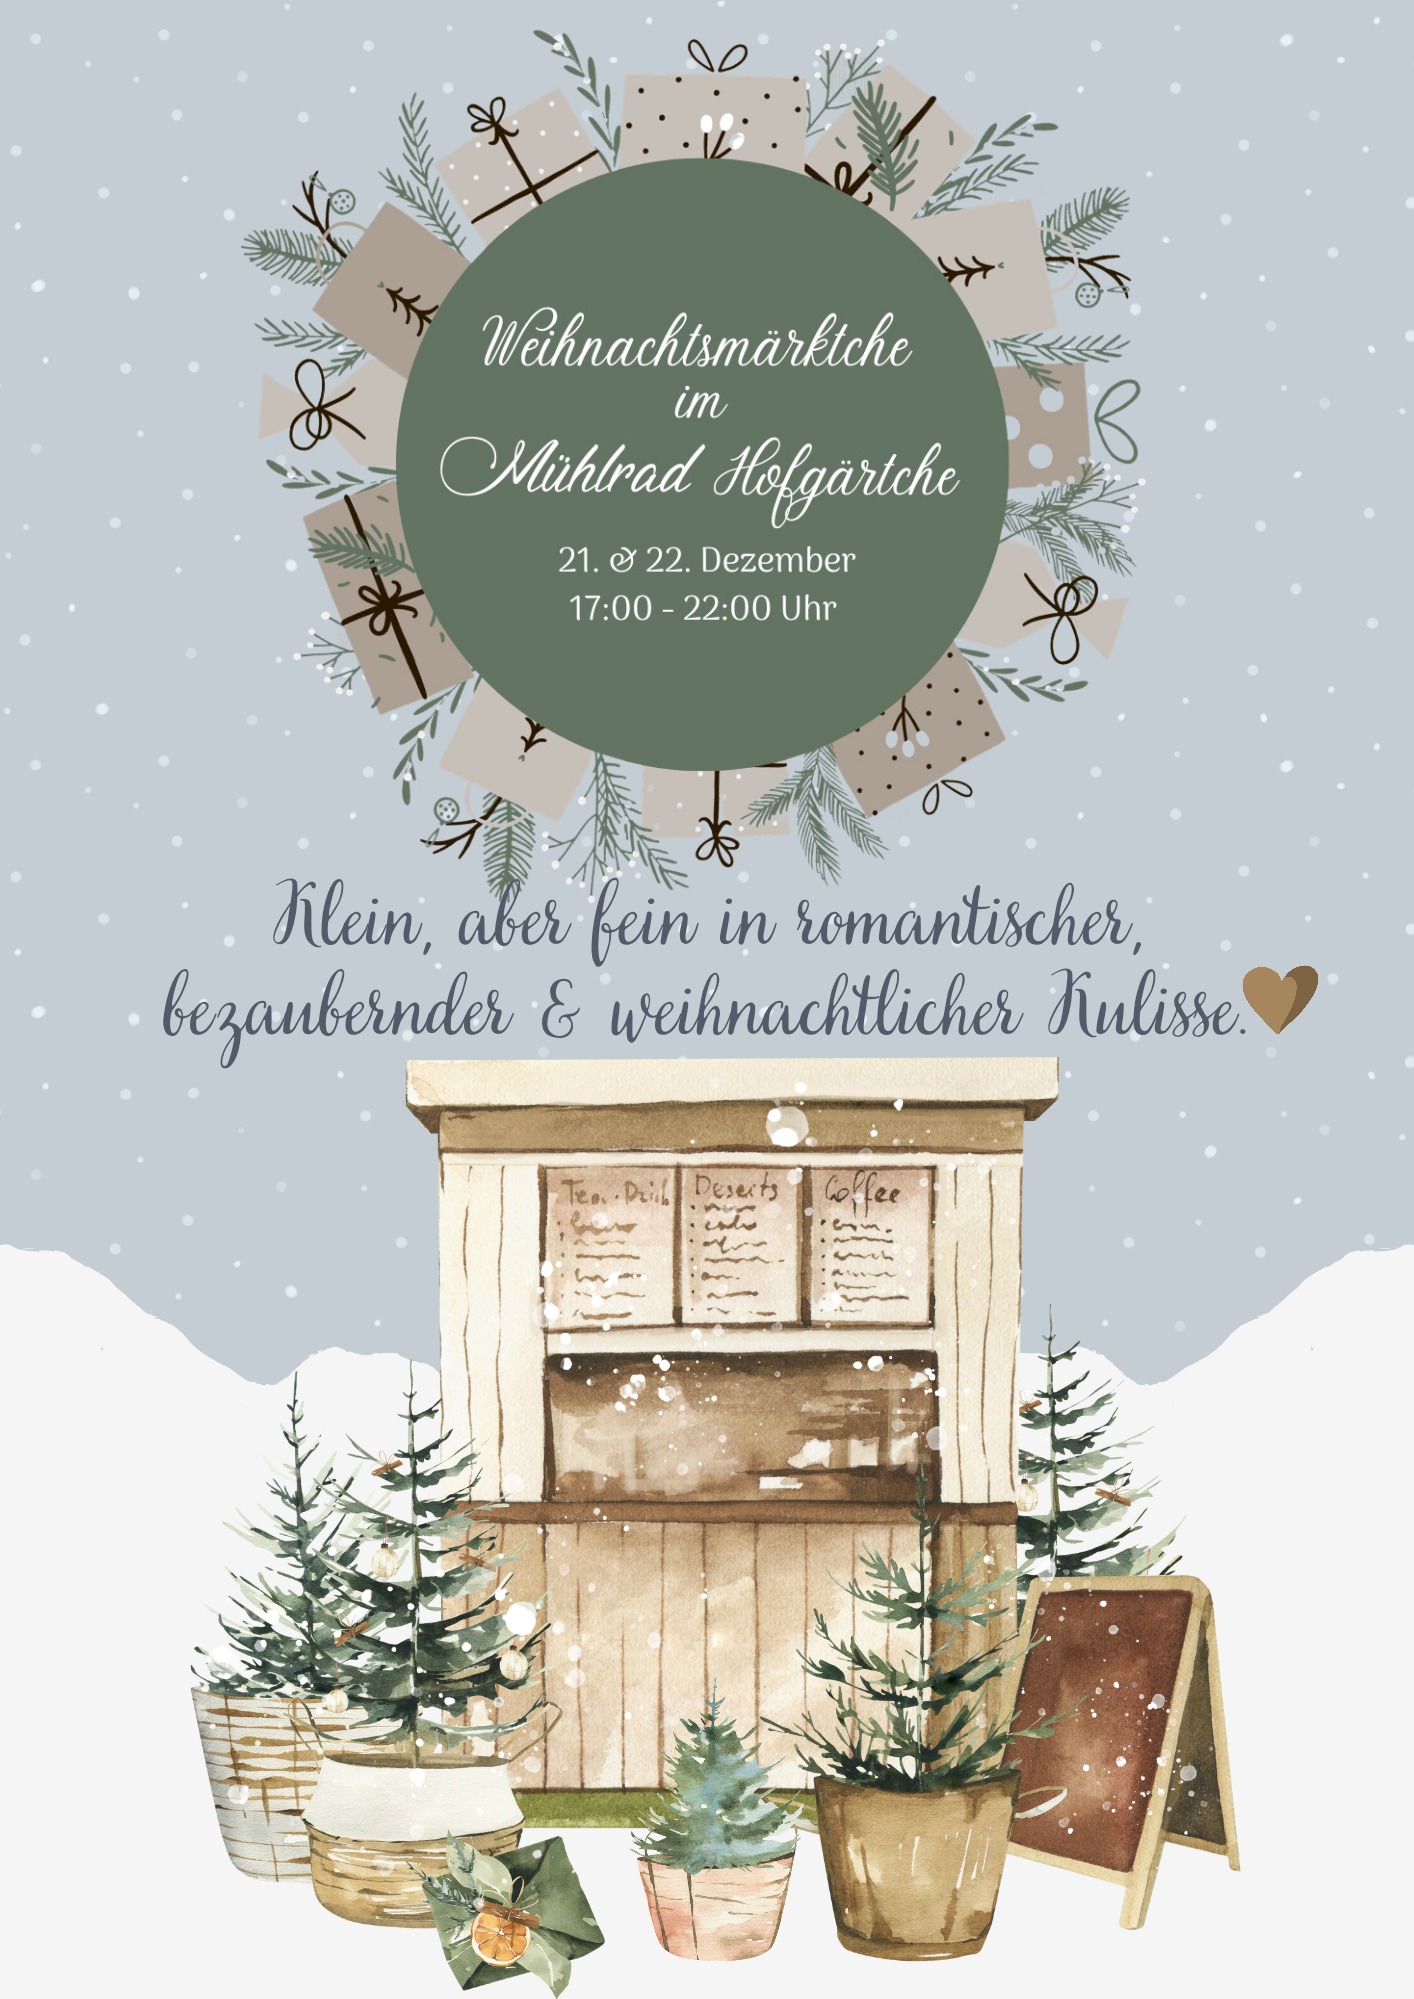 You are currently viewing Weihnachtsmärktche im Mühlrad Hofgärtche